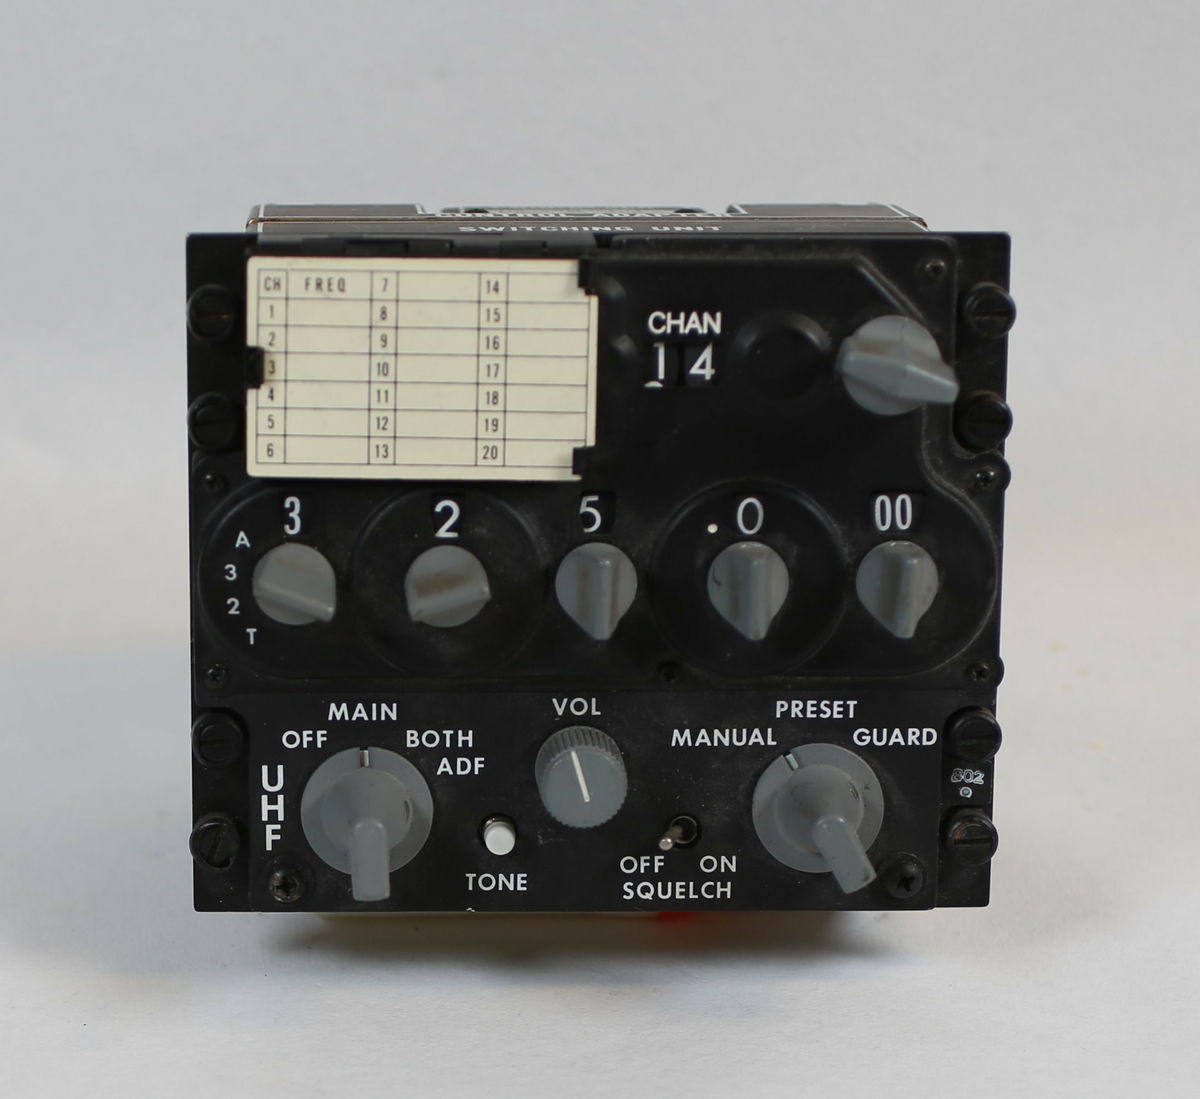 UHF Radio Control Panel til bruk i fly. Opererer på 225-399.975 MHz. Mulighet for 20 forhåndsinnstilte kanaler.